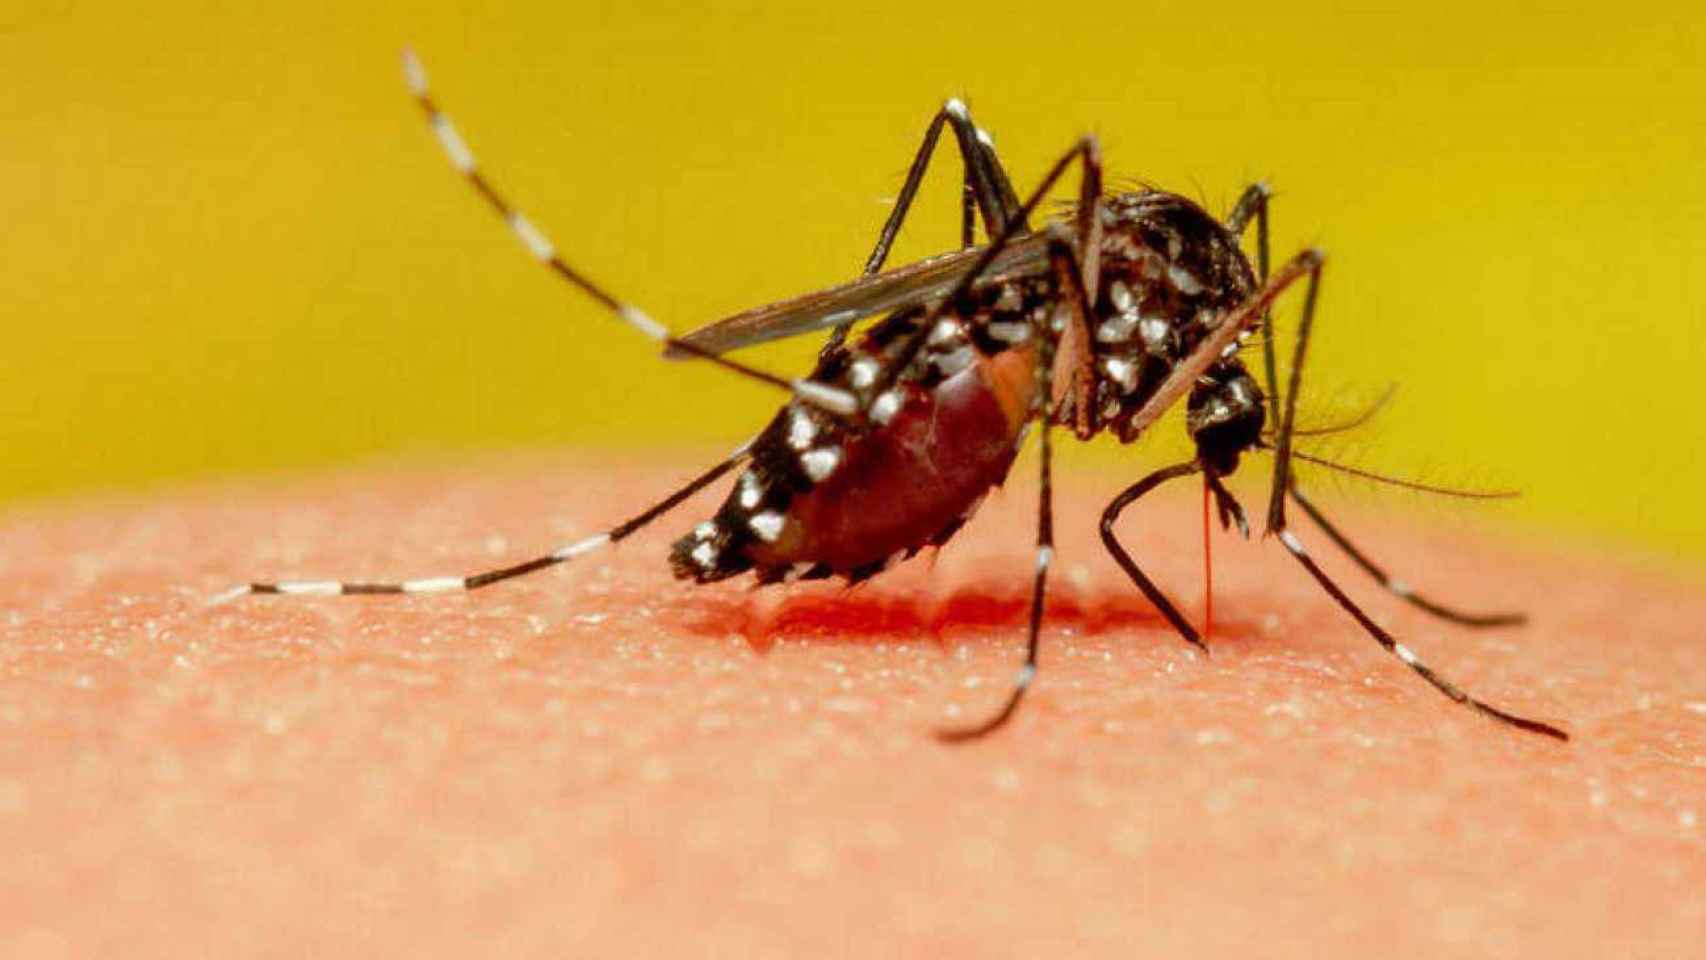 Un mosquito picando a una persona